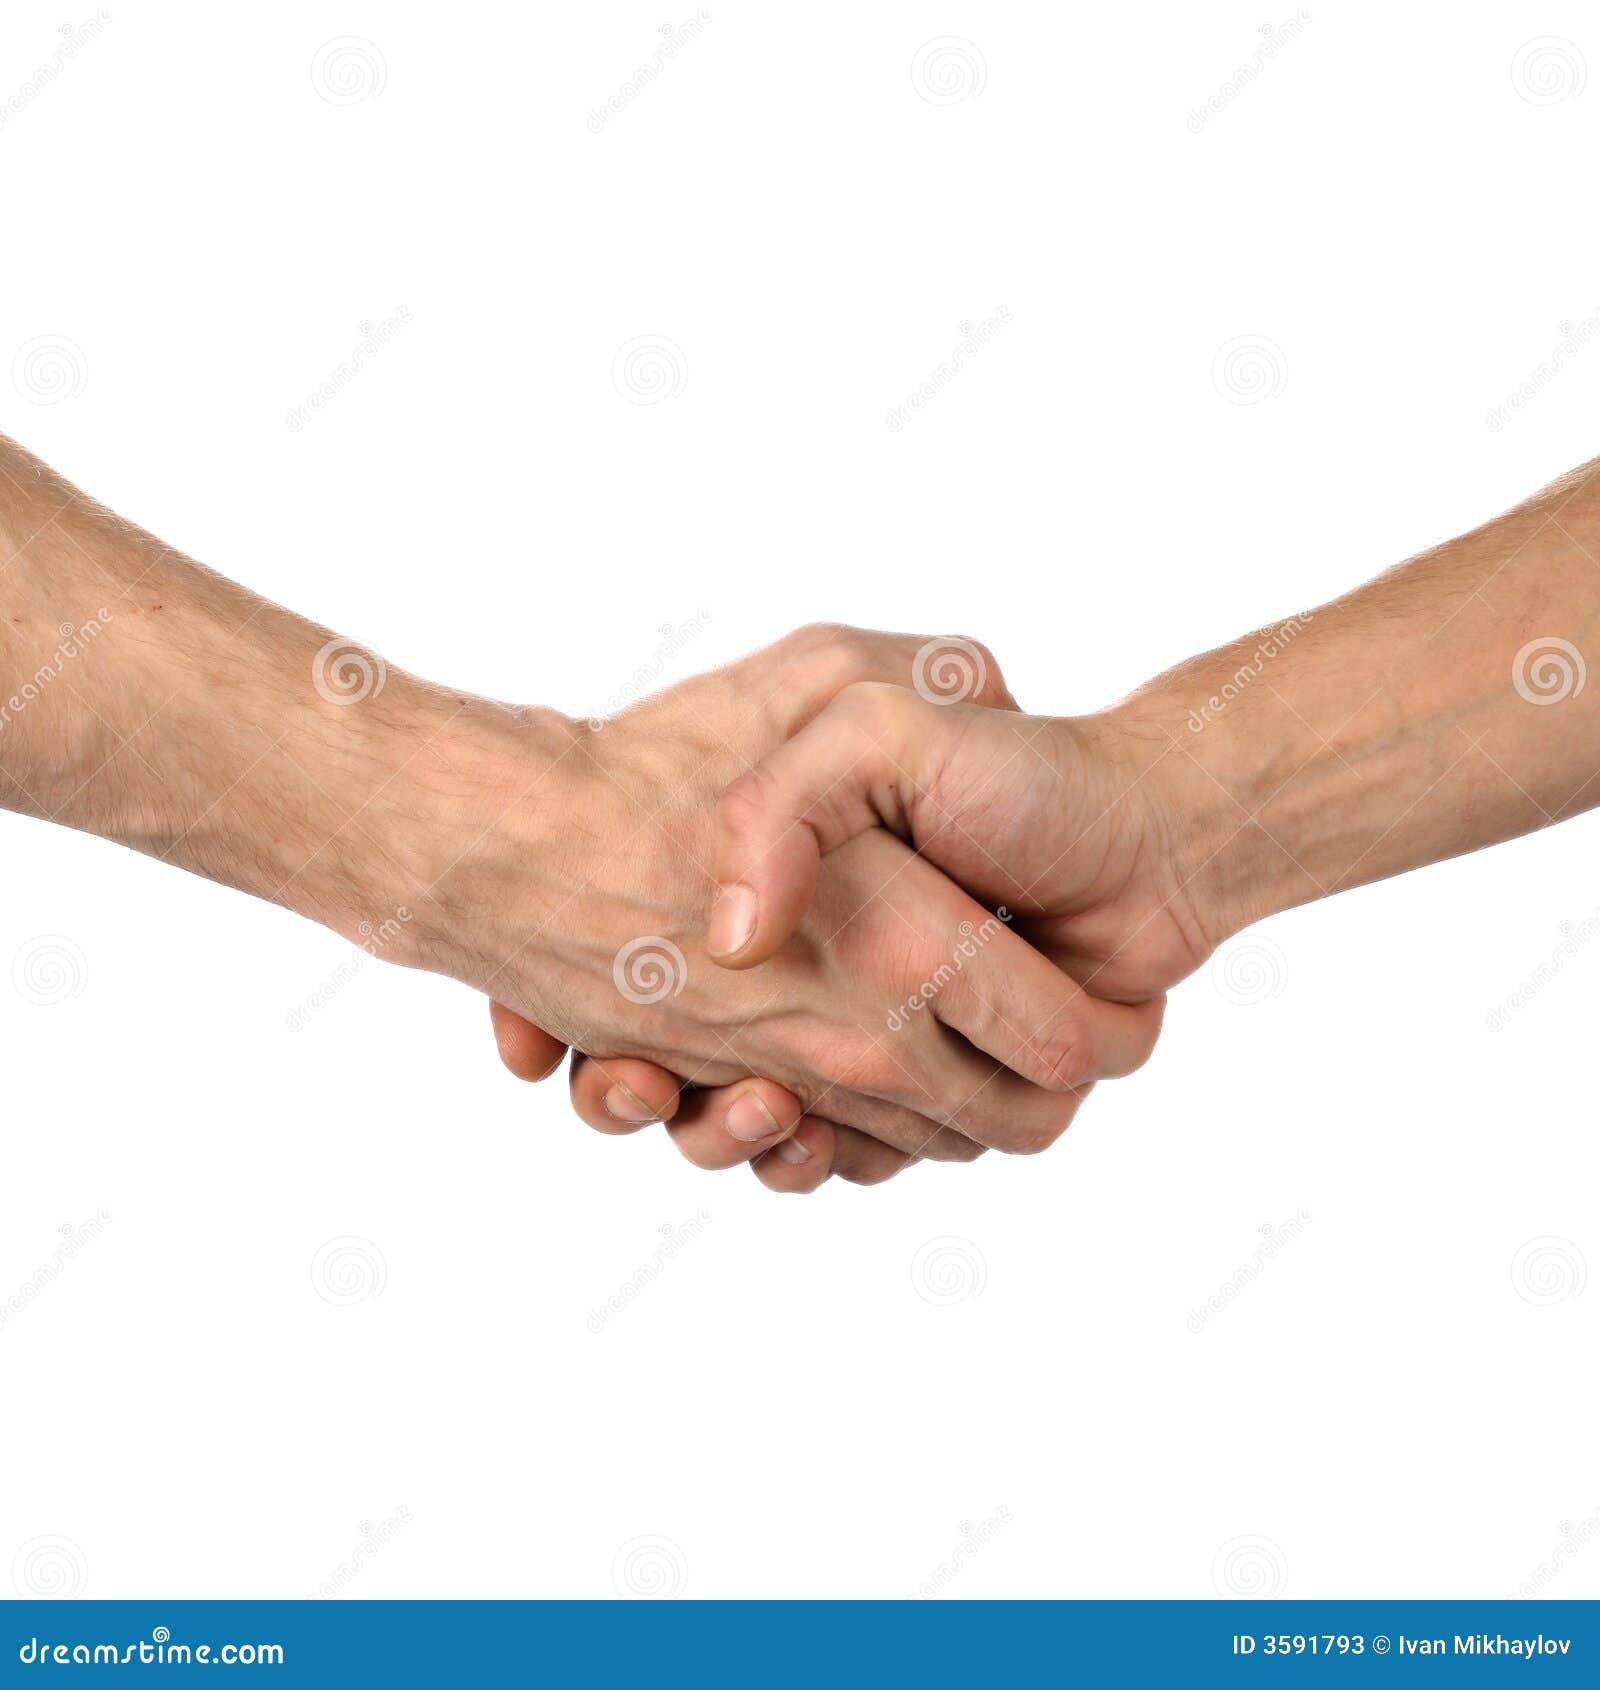 hand shake on white